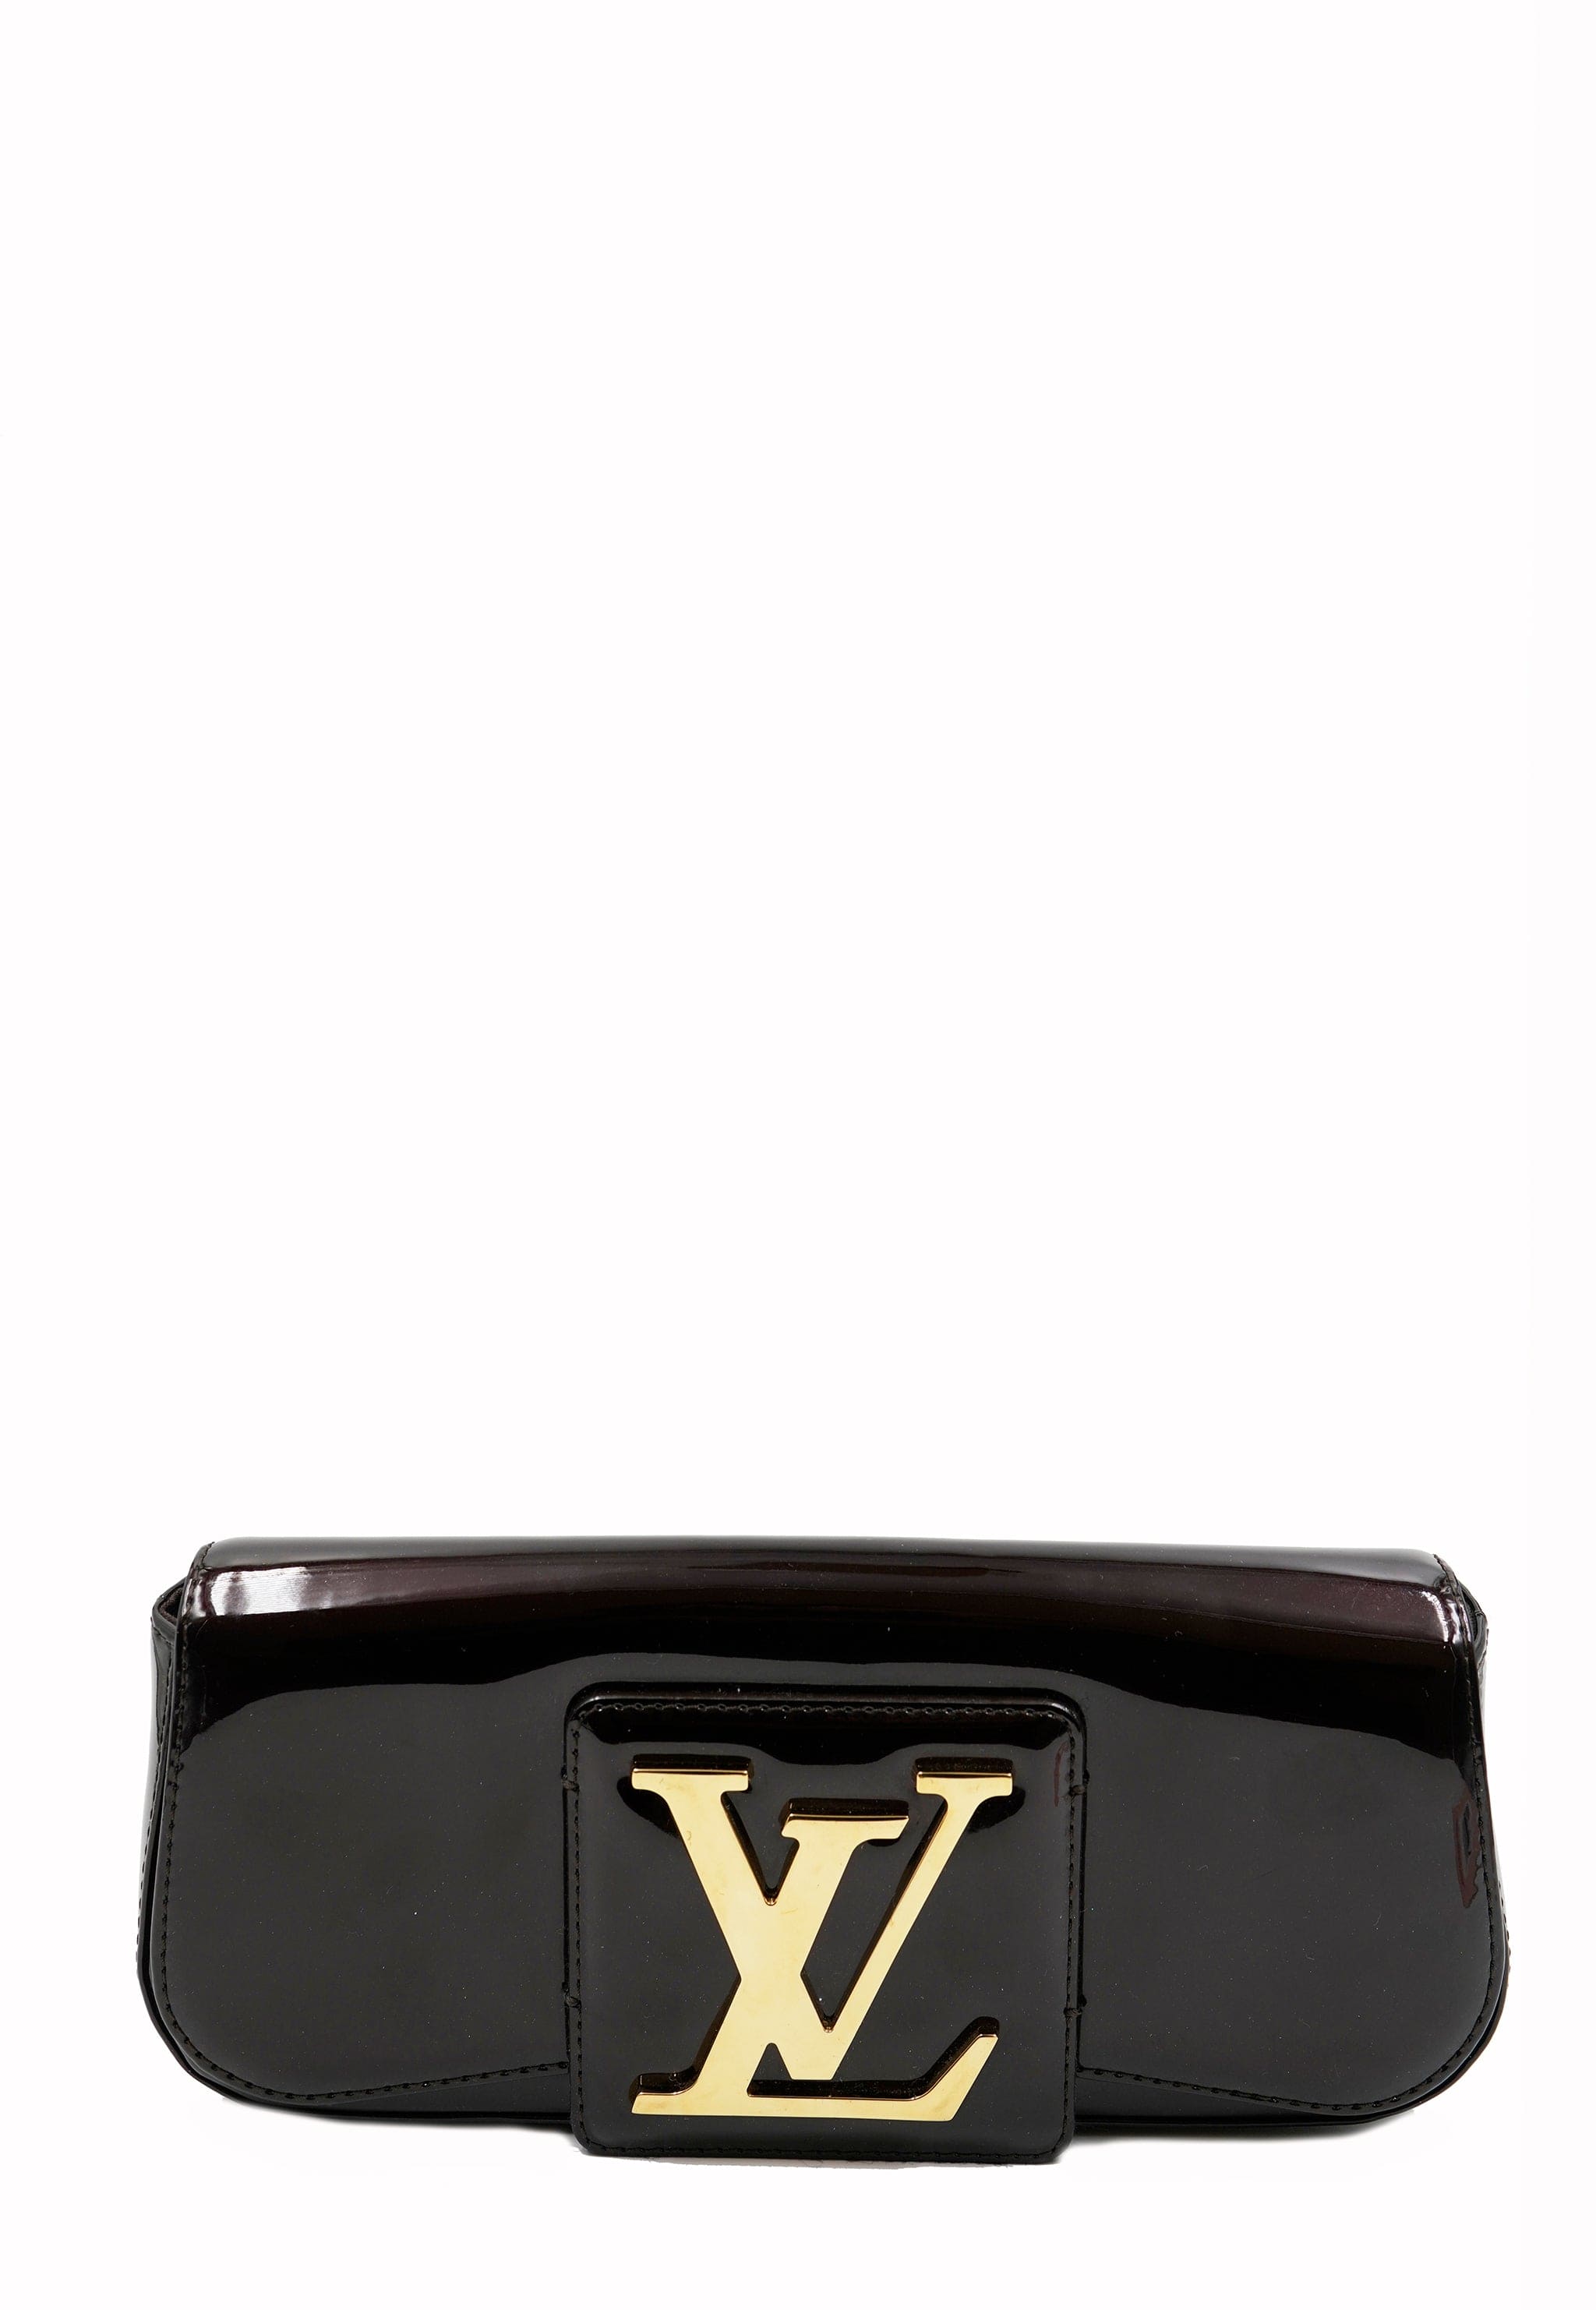 Louis Vuitton Vernis Clutch Bag Wine ASL5424